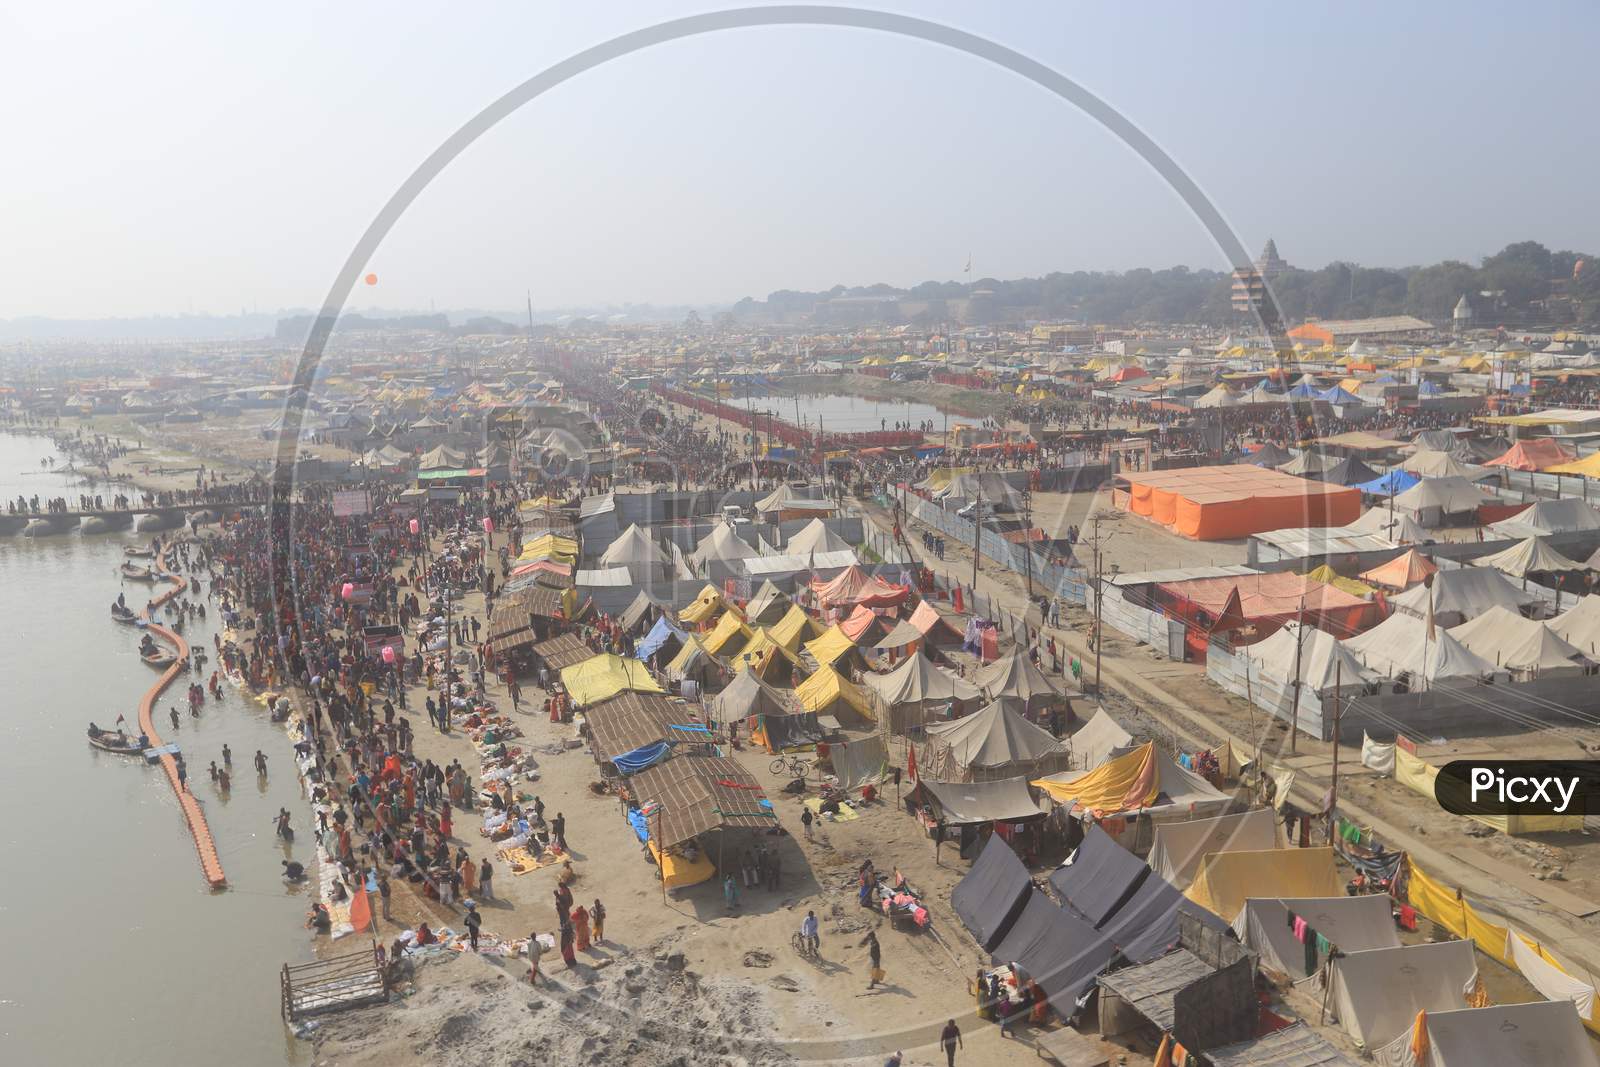 Tents Or Shelters Arranged At Prayag Raj  on Triveni Sangam River Bank During Magh Mela 2020